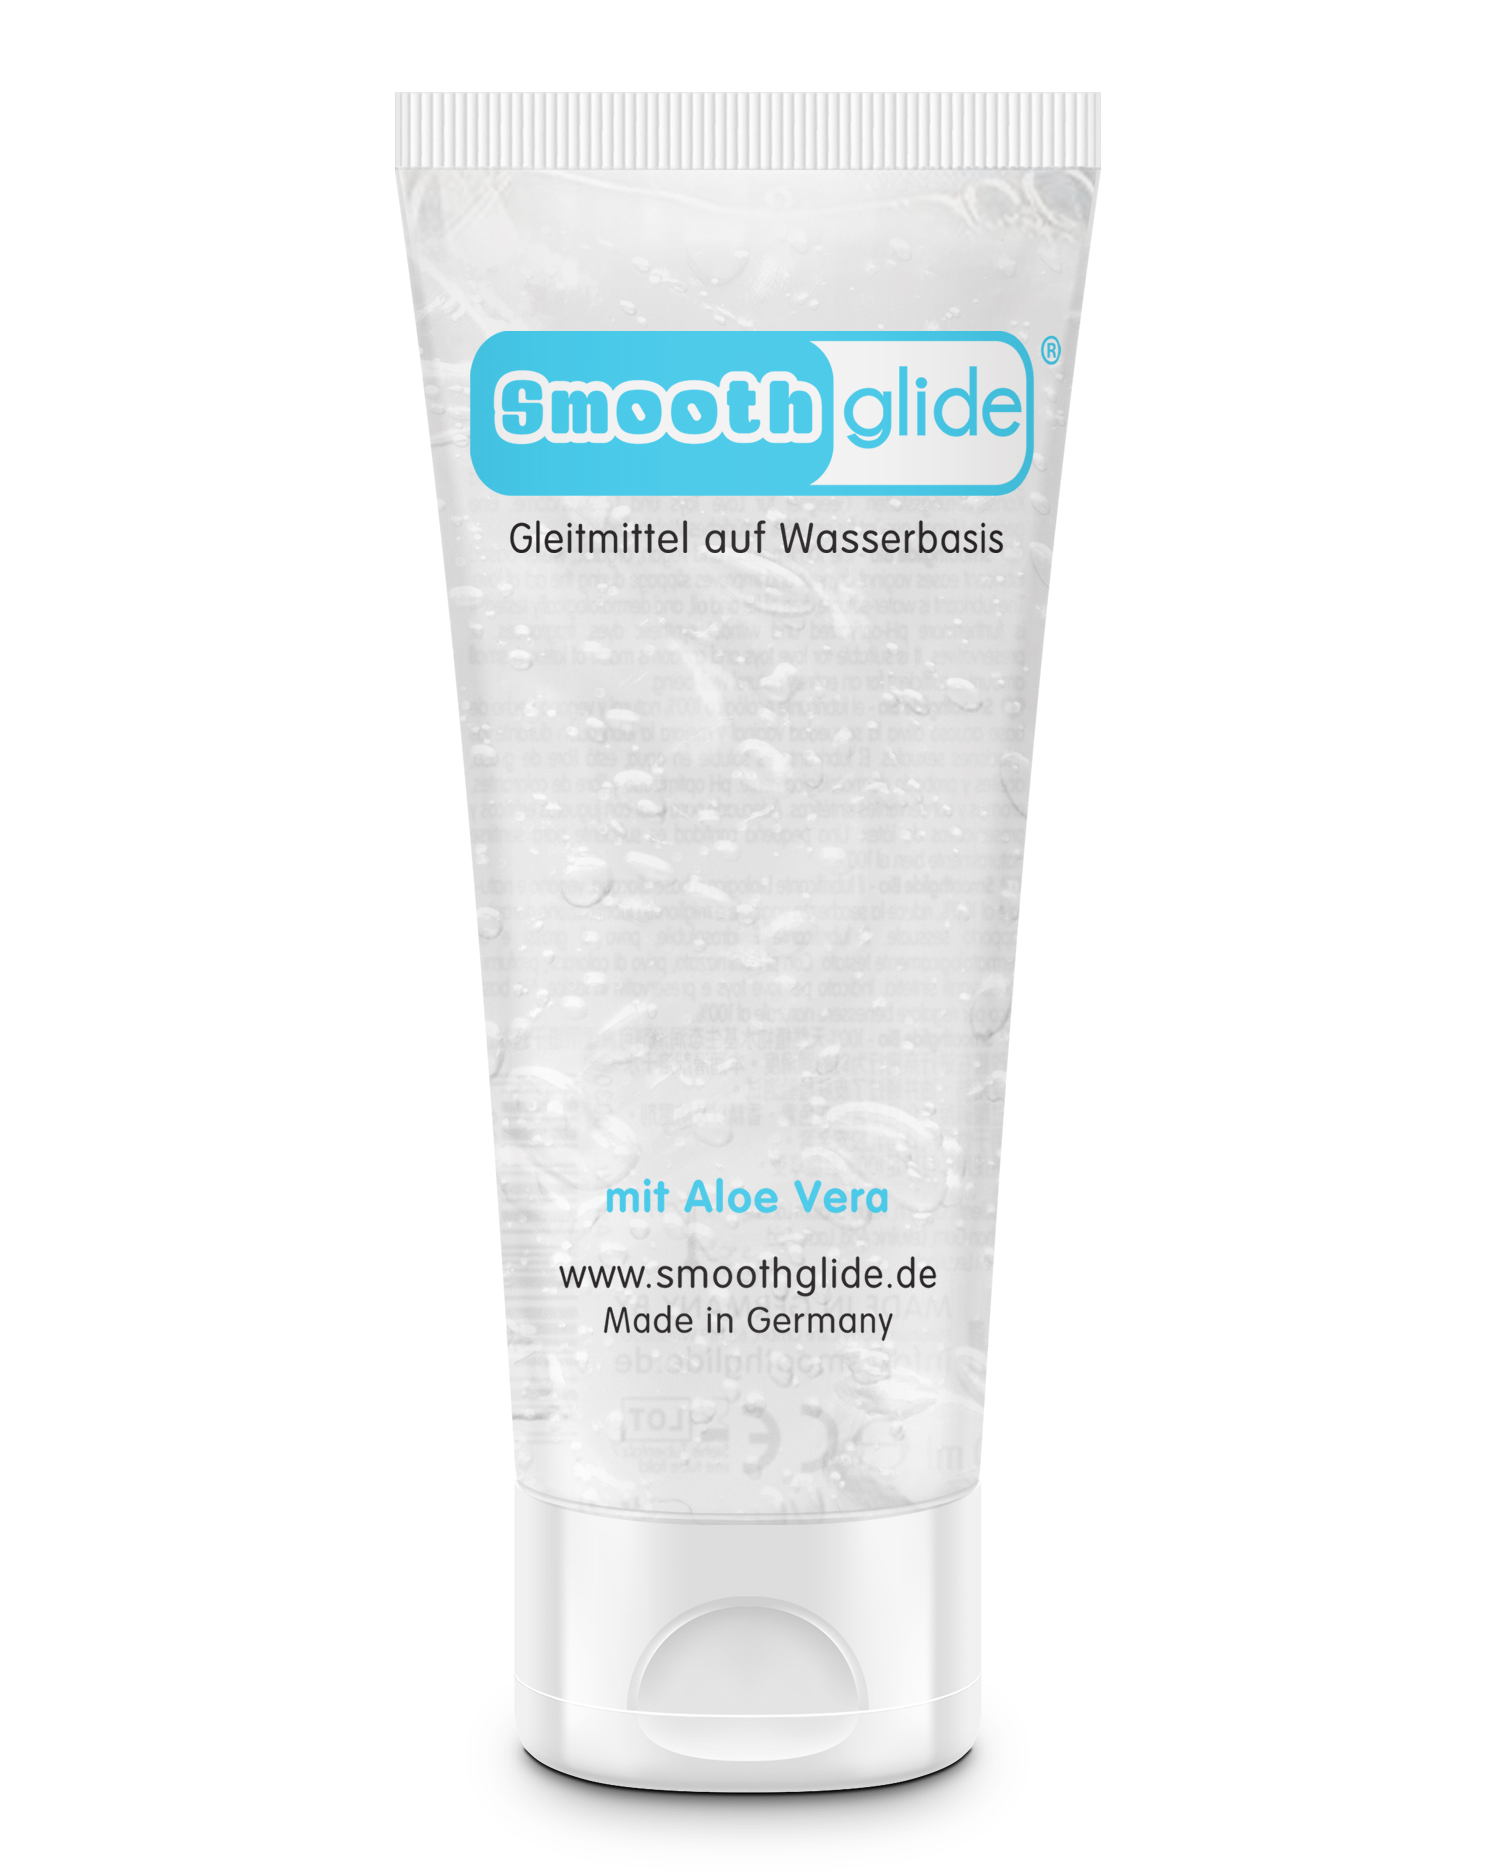 Smoothglide Aqua Glide Gleitgel Anal Sex Gleitmittel Intimgel Wasserbasis 200ml Ebay 1196